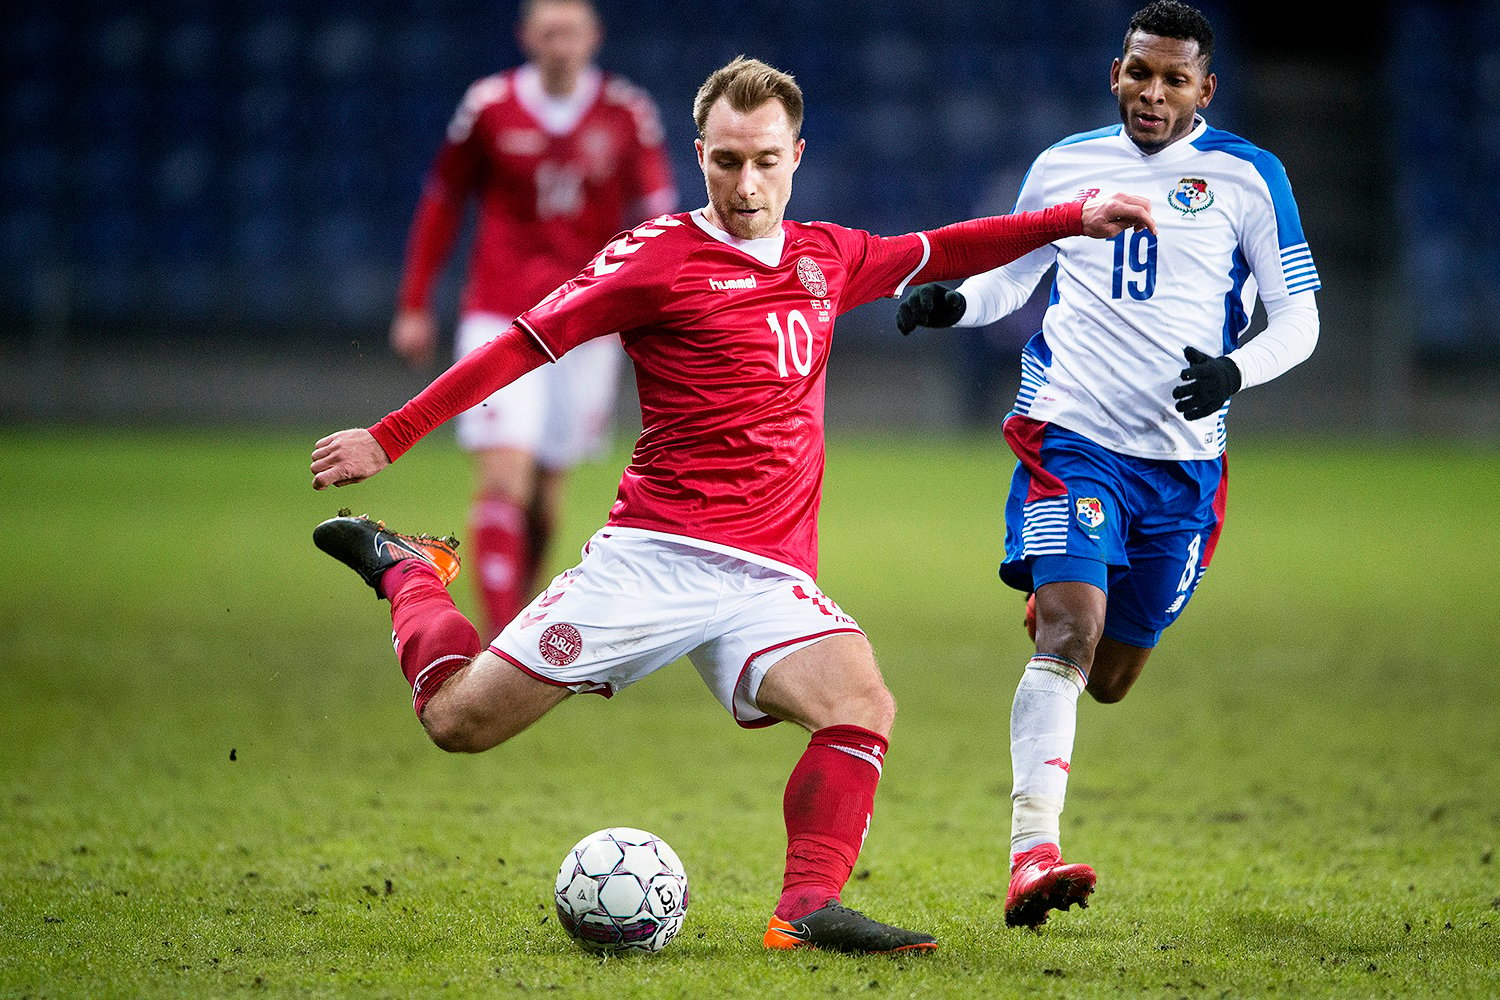 O jogador da Dinamarca, Christian Eriksen, durante amistoso contra o Panamá, realizado no Estádio Brøndby, em Copenhague - 22/03/2018